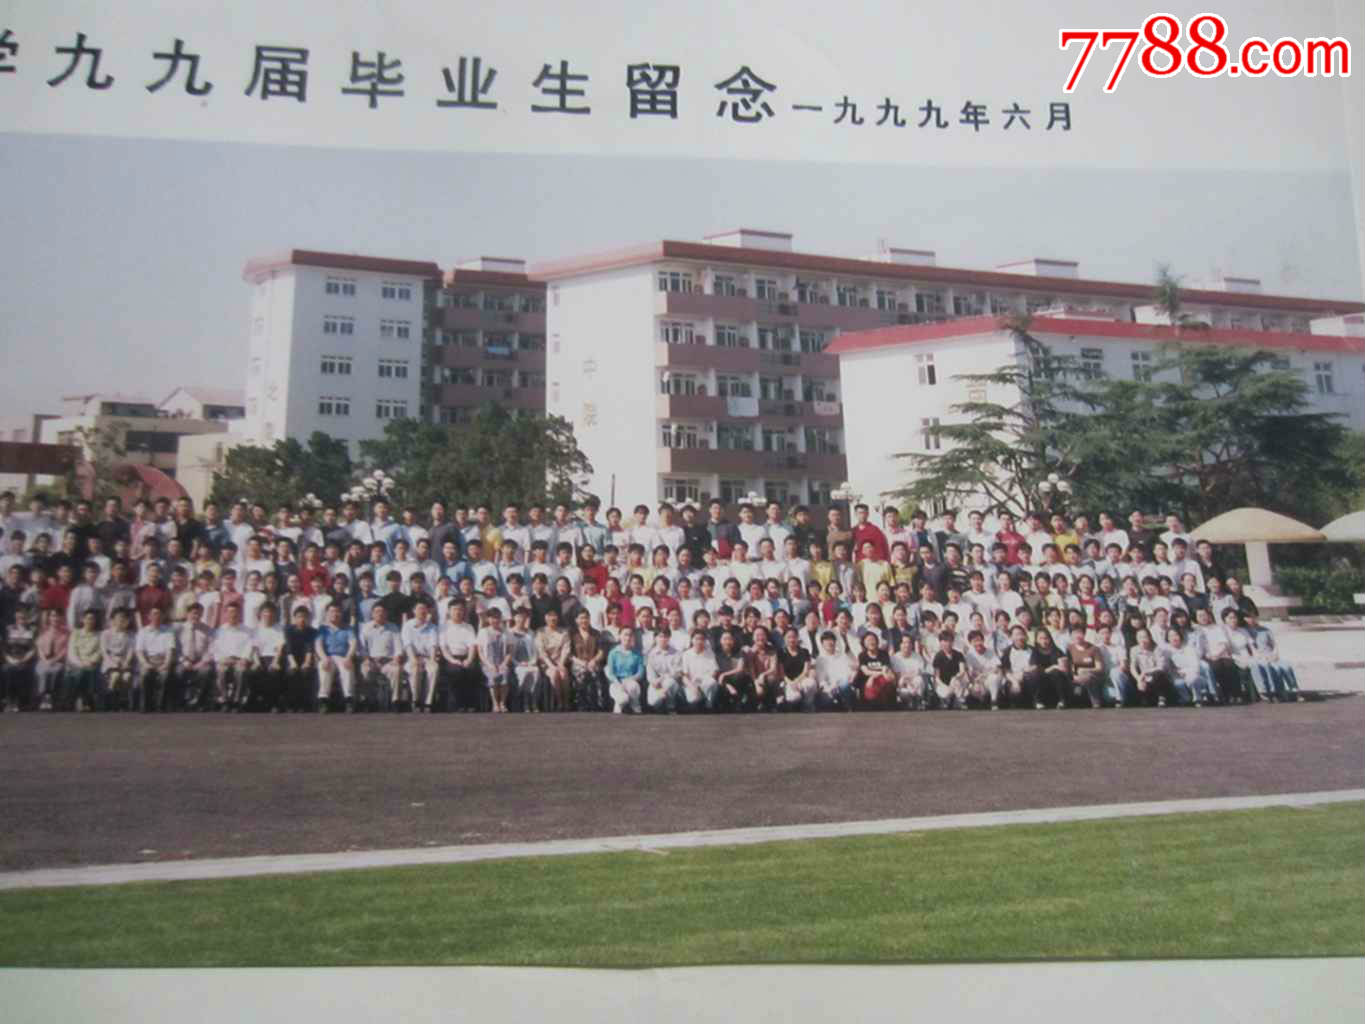 一九九九年上海交通大学附属中学九九届毕业生留念3(老照片)